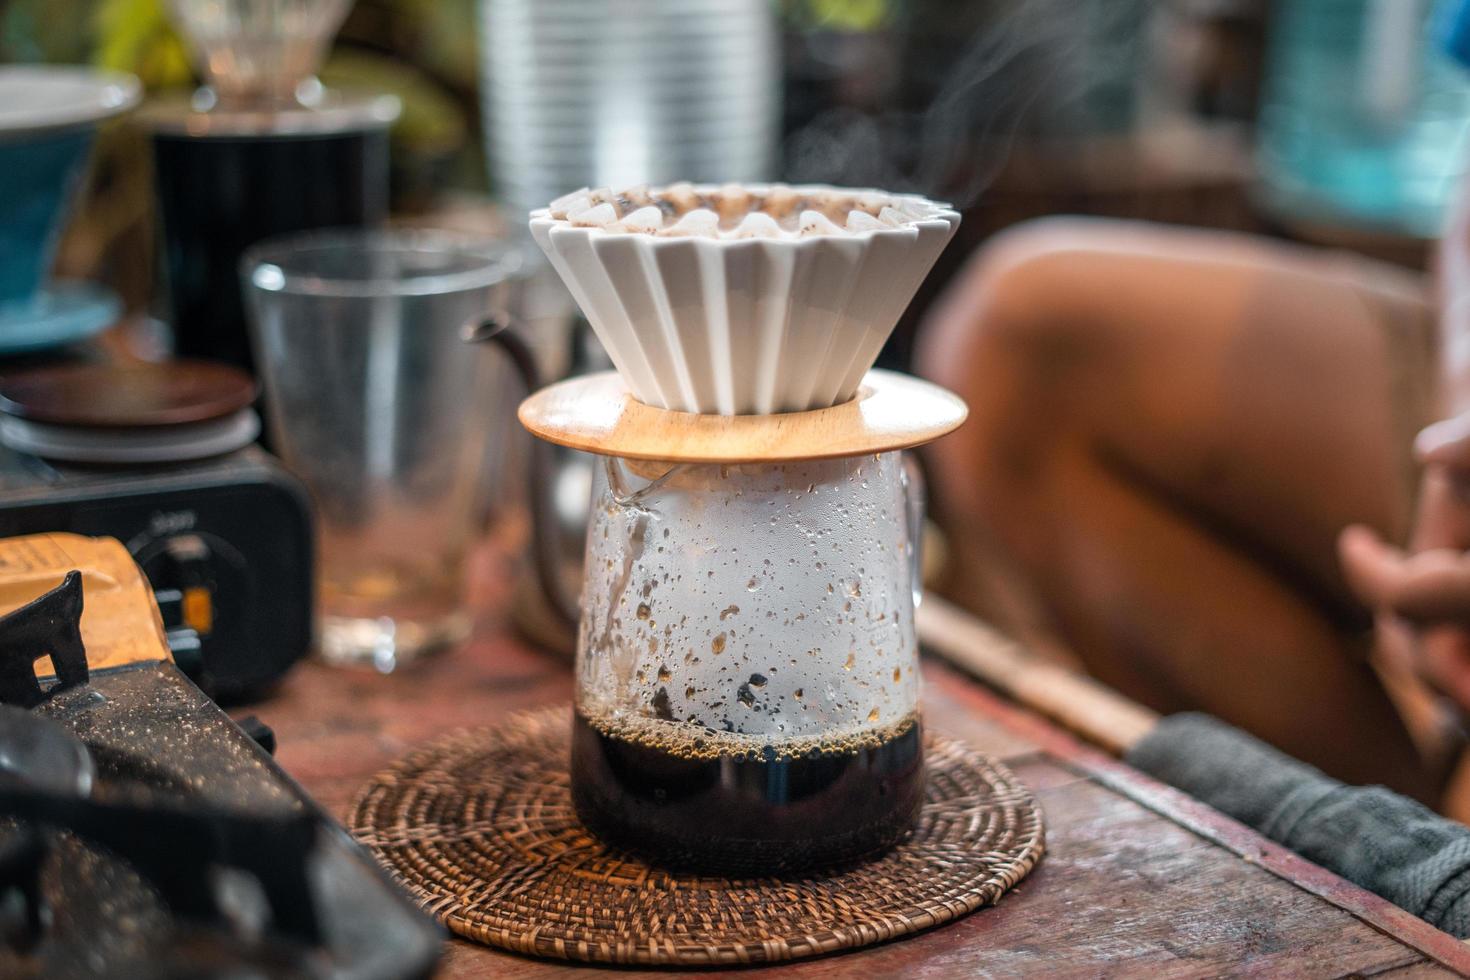 Tropfkaffee, Barista gießt Wasser auf Kaffeesatz mit Filter foto